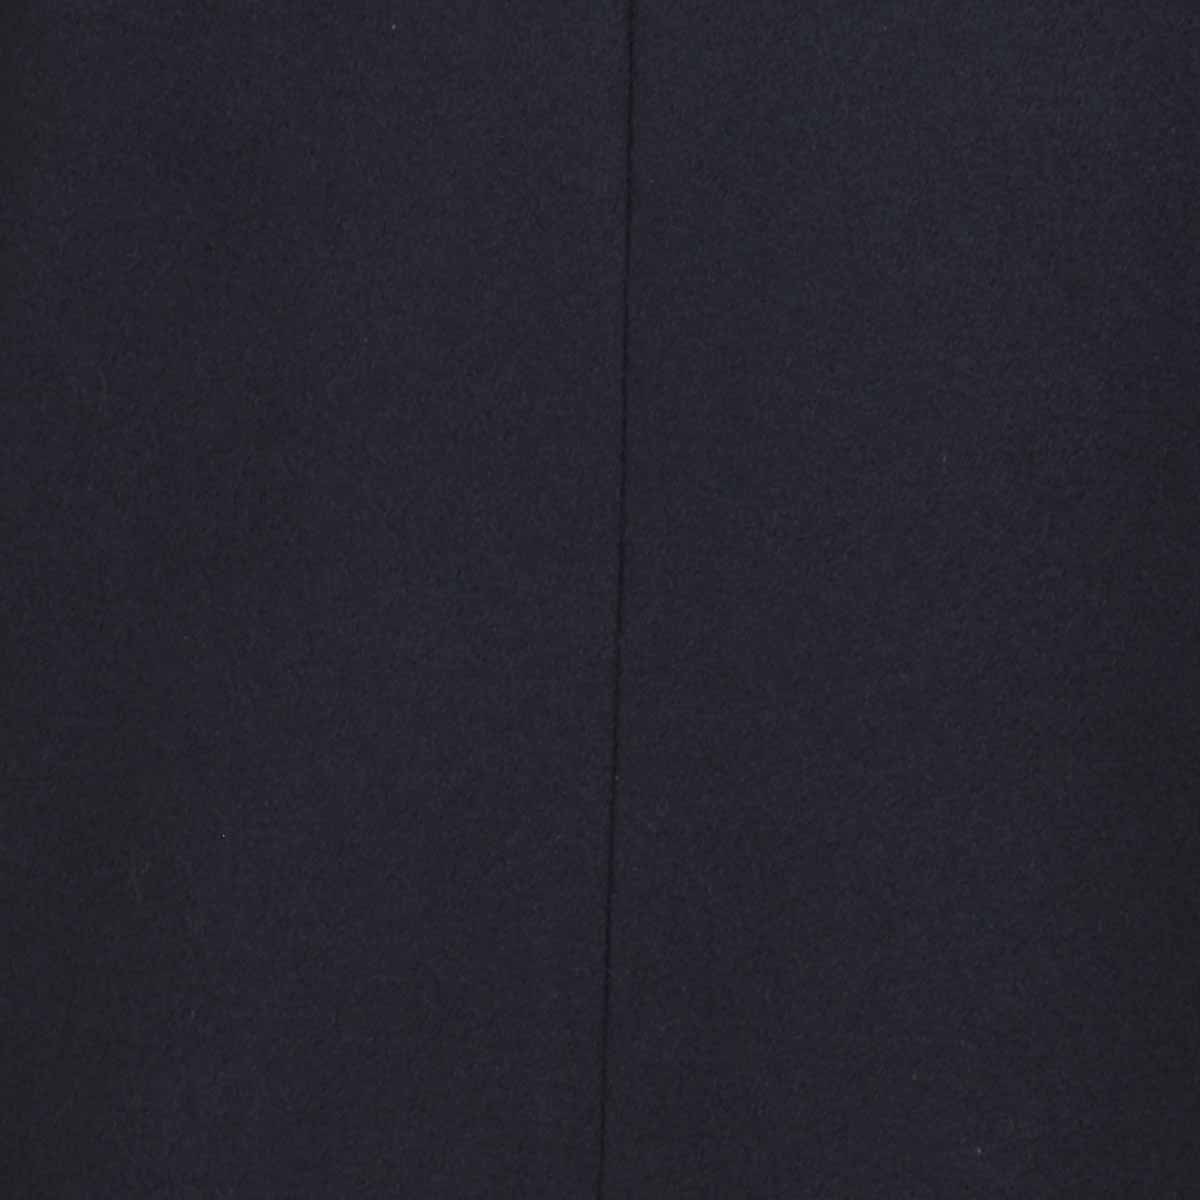 Abrigo Formal Azul Obscuro con 5 Botones para Caballero Carlo Corinto Modelo Amn1020311